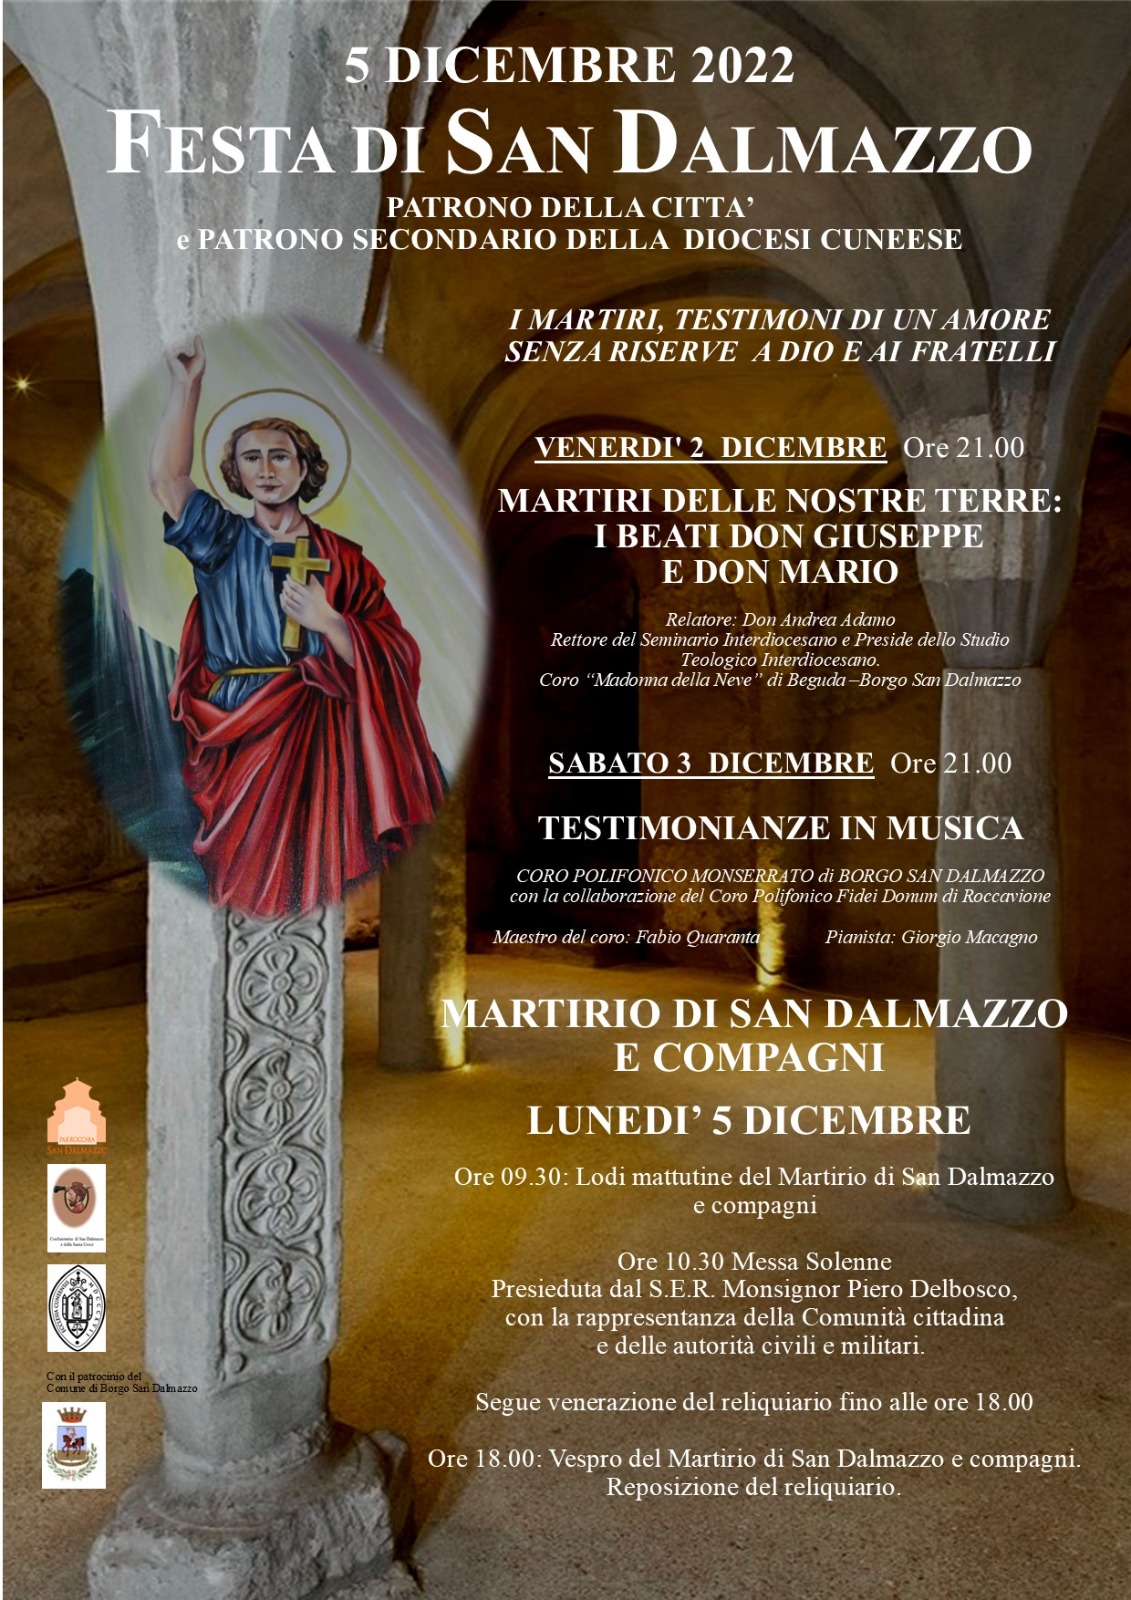 La Festa di San Dalmazzo - 5 dicembre 2022